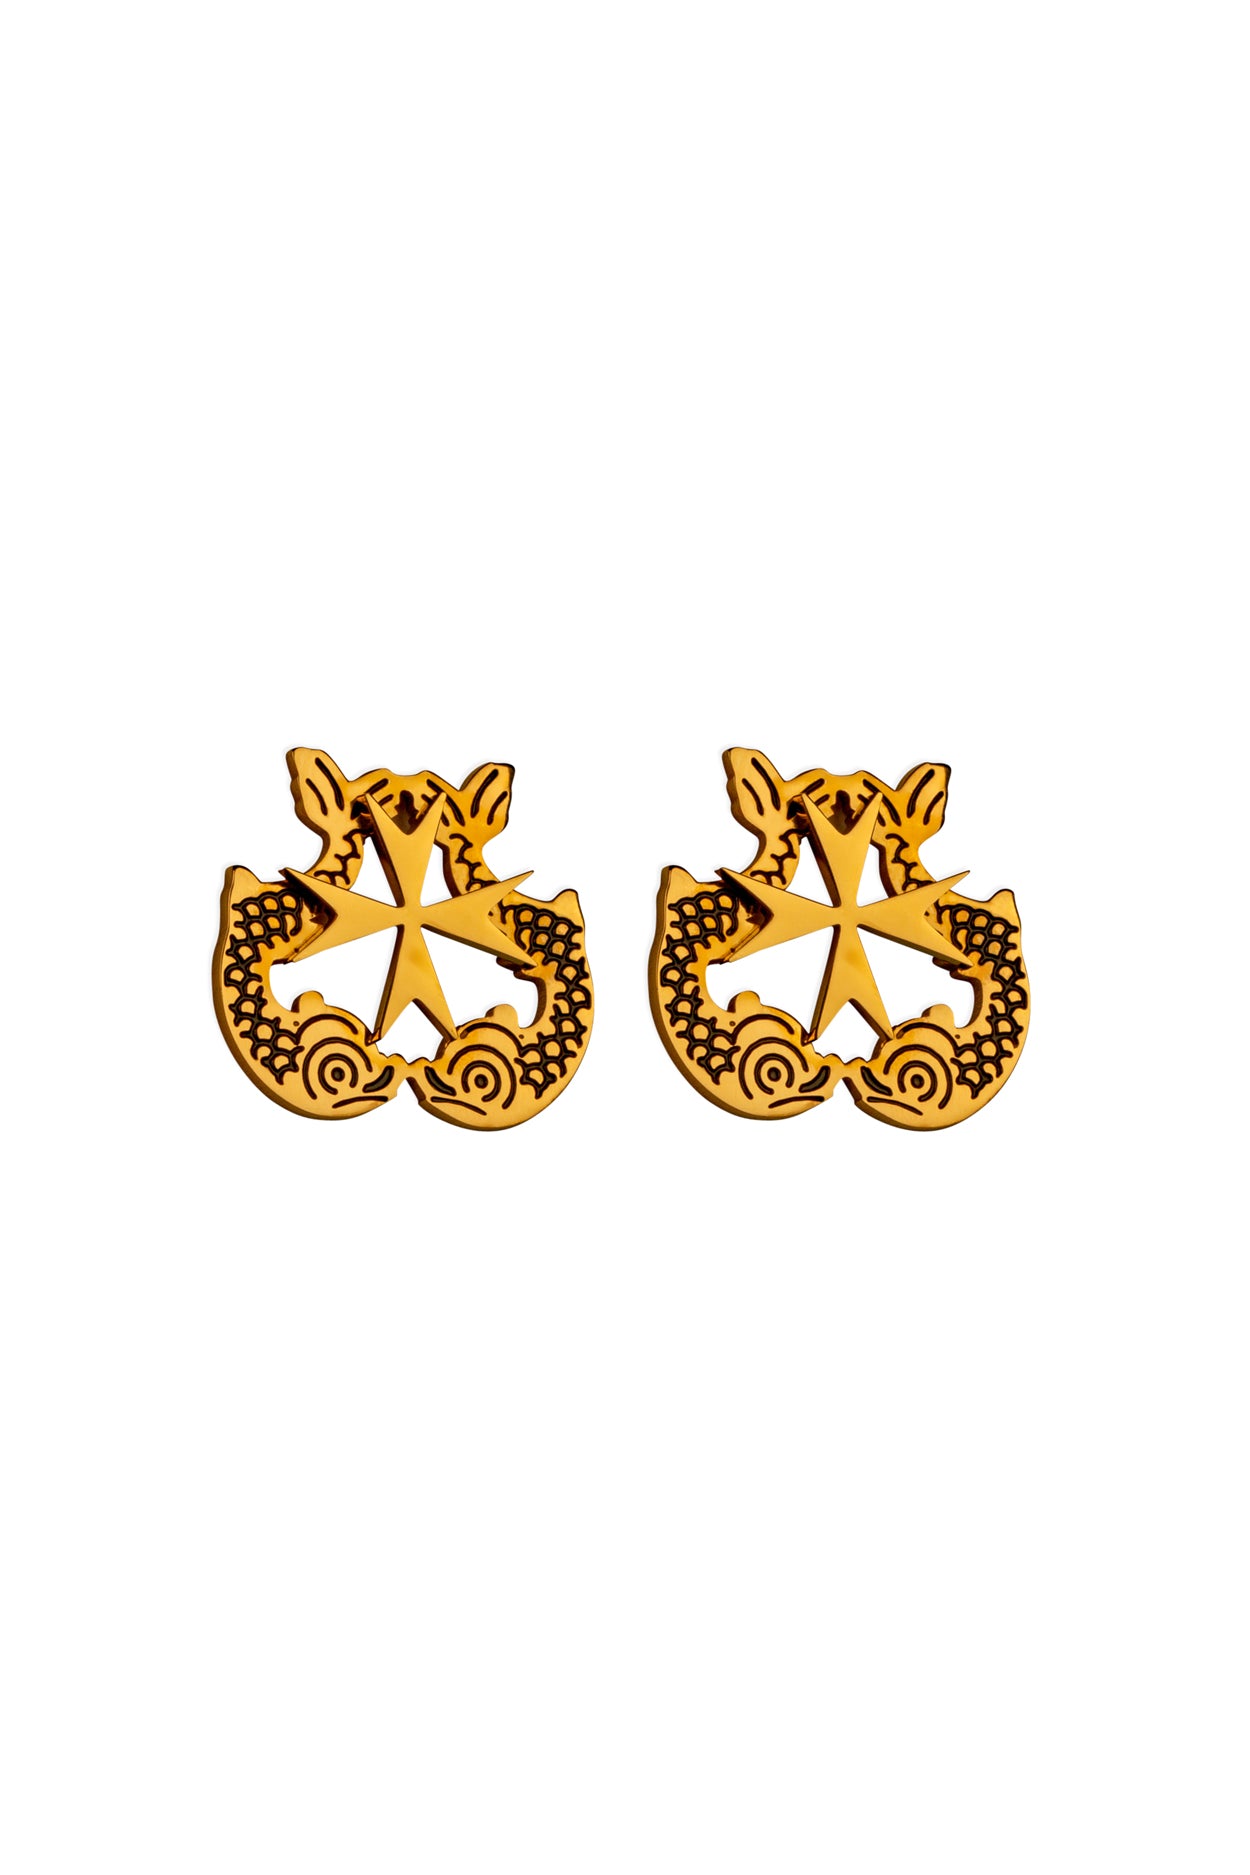 Dolphin &amp; Maltese Cross Stud Earring Set